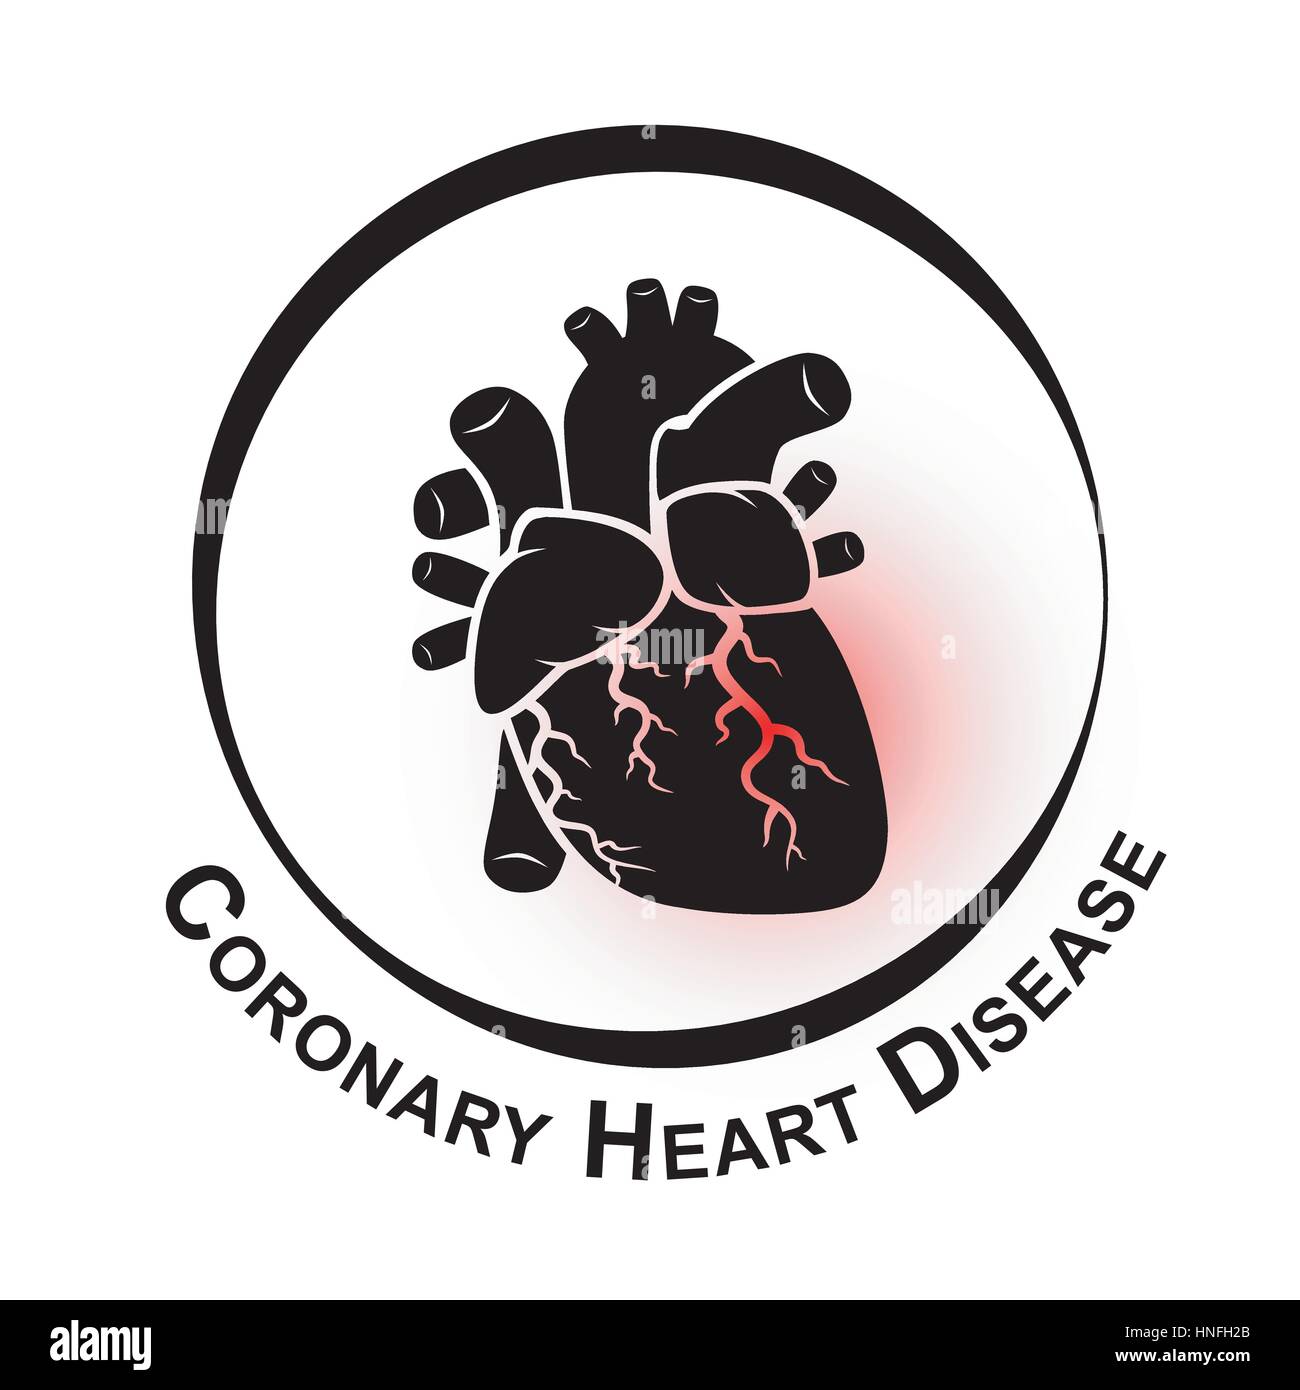 La malattia di cuore coronarica simbolo ( malattia cardiaca ischemica, infarto del miocardio ) area rossa in corrispondenza di arteria coronaria ( trombo occludere in arteria coronaria ) Illustrazione Vettoriale